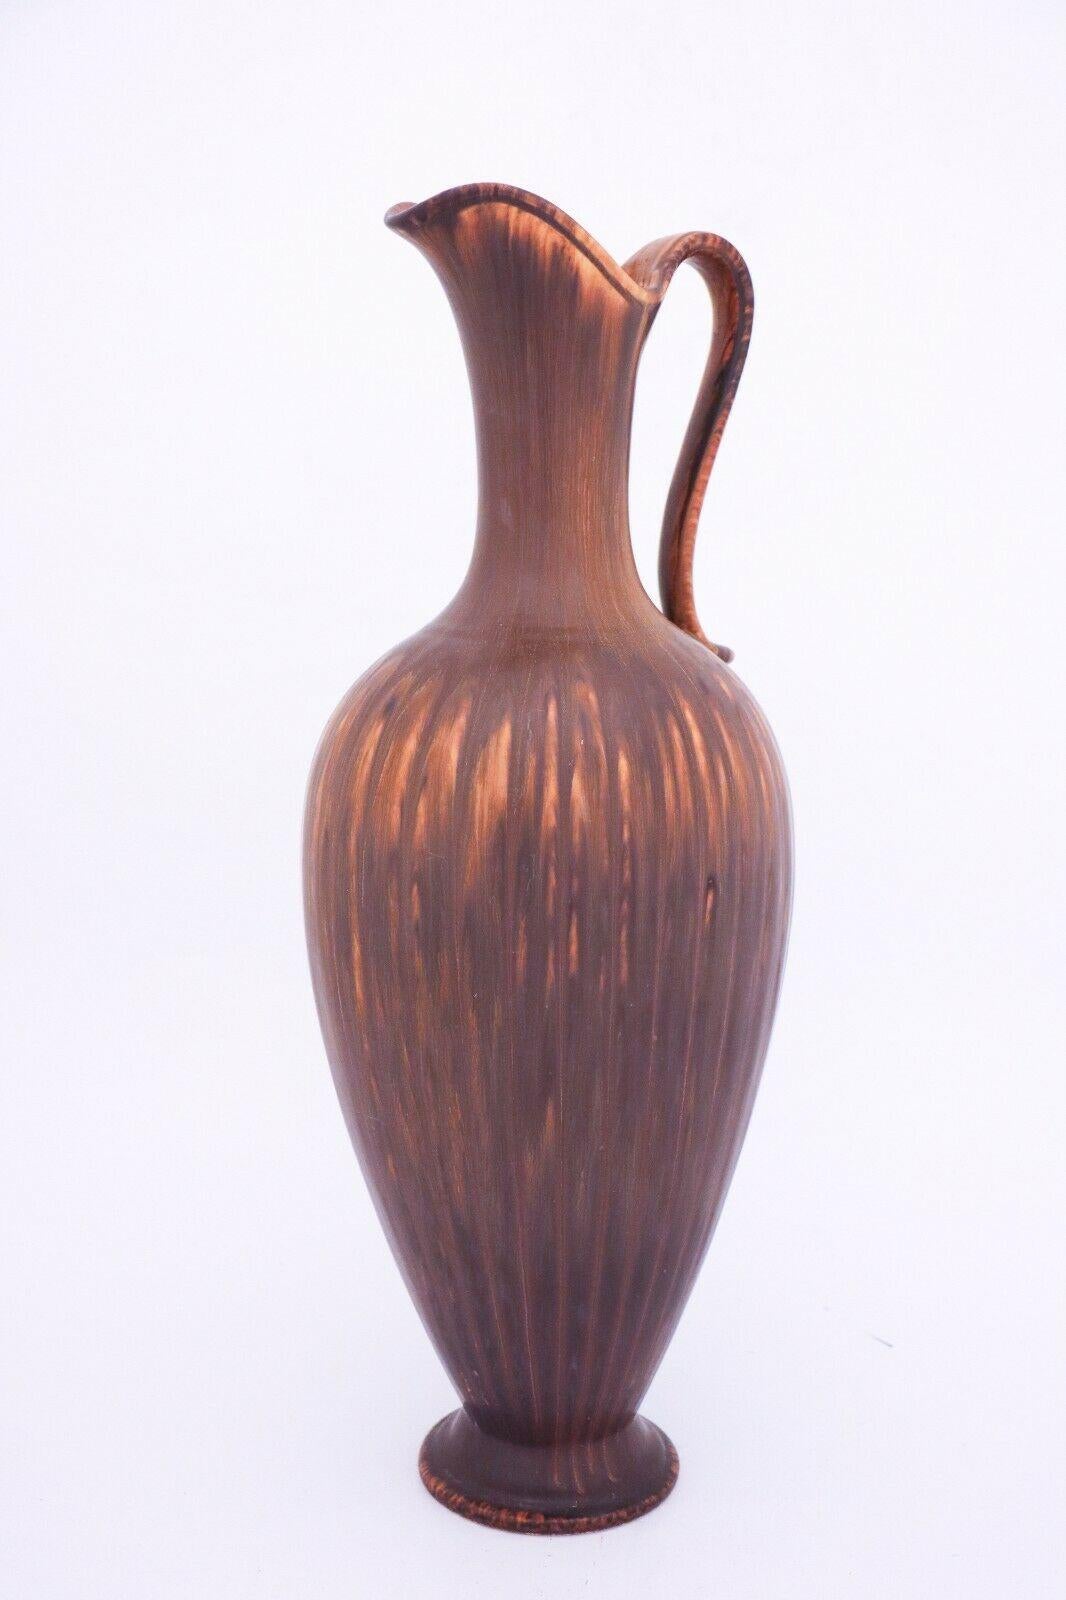 Eine schöne braune Vase, entworfen von Gunnar Nylund in Rrstrand. Er ist 45 cm hoch und in sehr gutem Zustand, außer einigen kleinen Kratzern. Die Vase ist mit der Qualität 1st gekennzeichnet. 

 